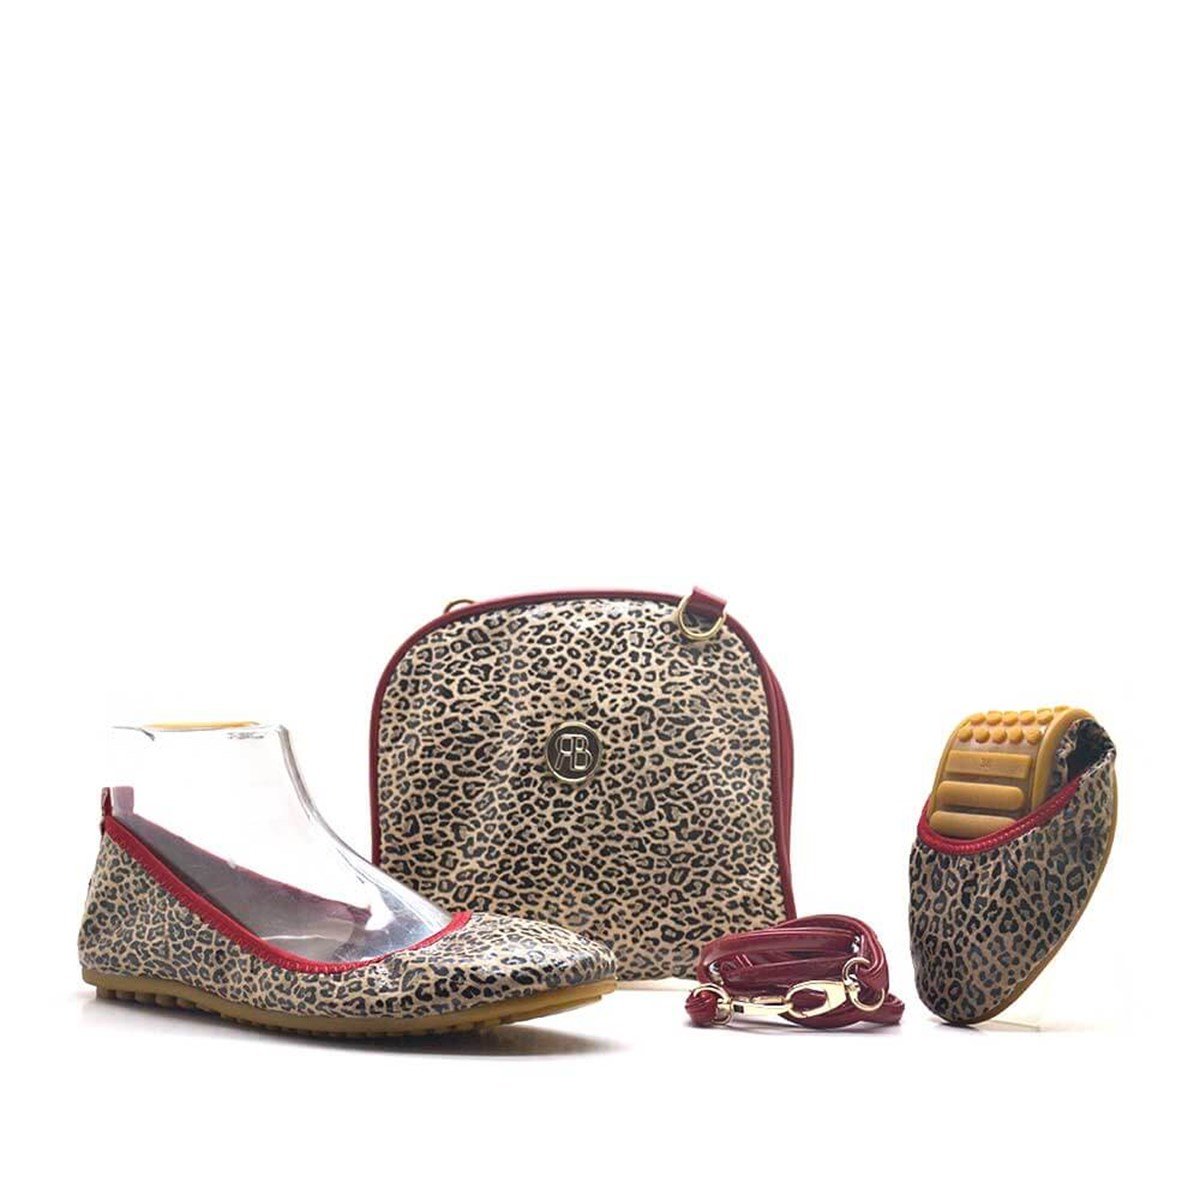 Foldable Leopard Pattern Women Babette With Its Portfolio Bag